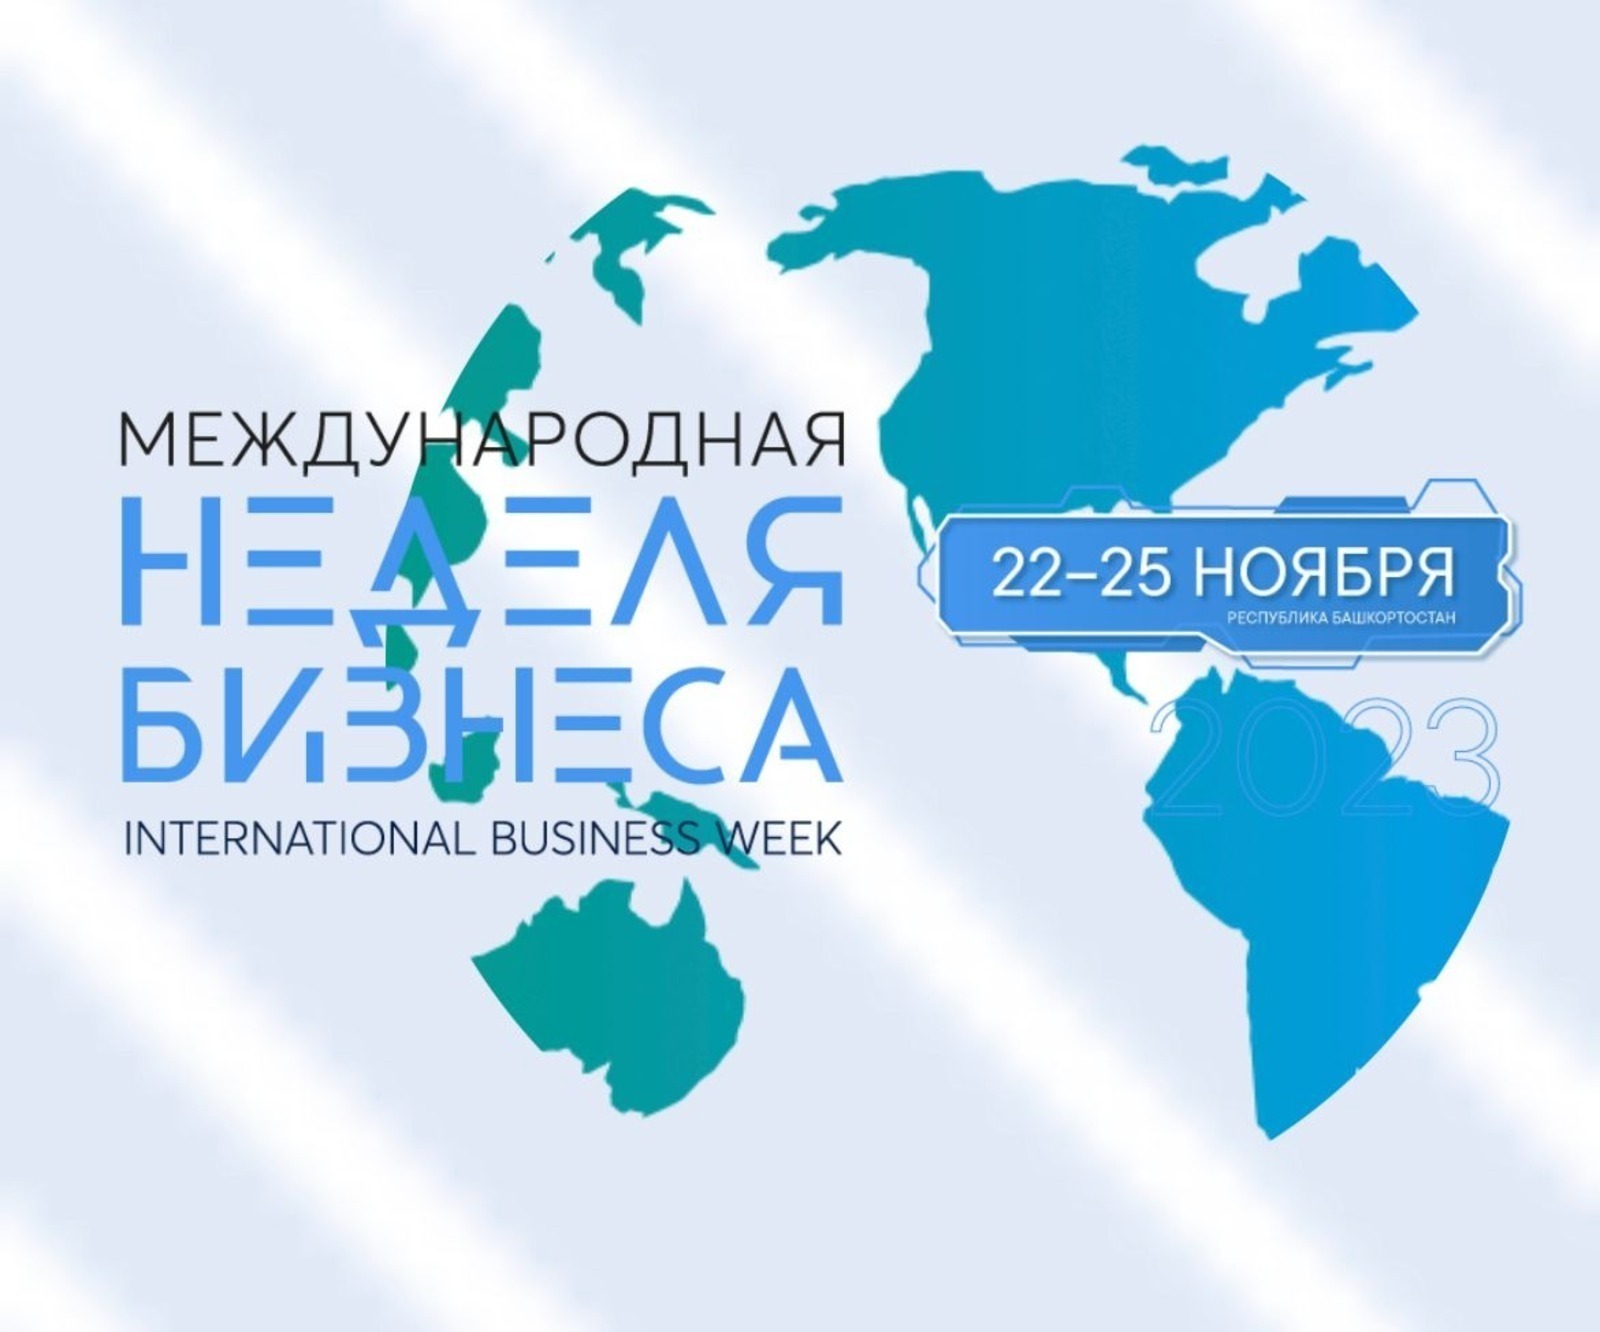 Мария Захарова объявила о проведении Международной недели бизнеса в столице Башкирии